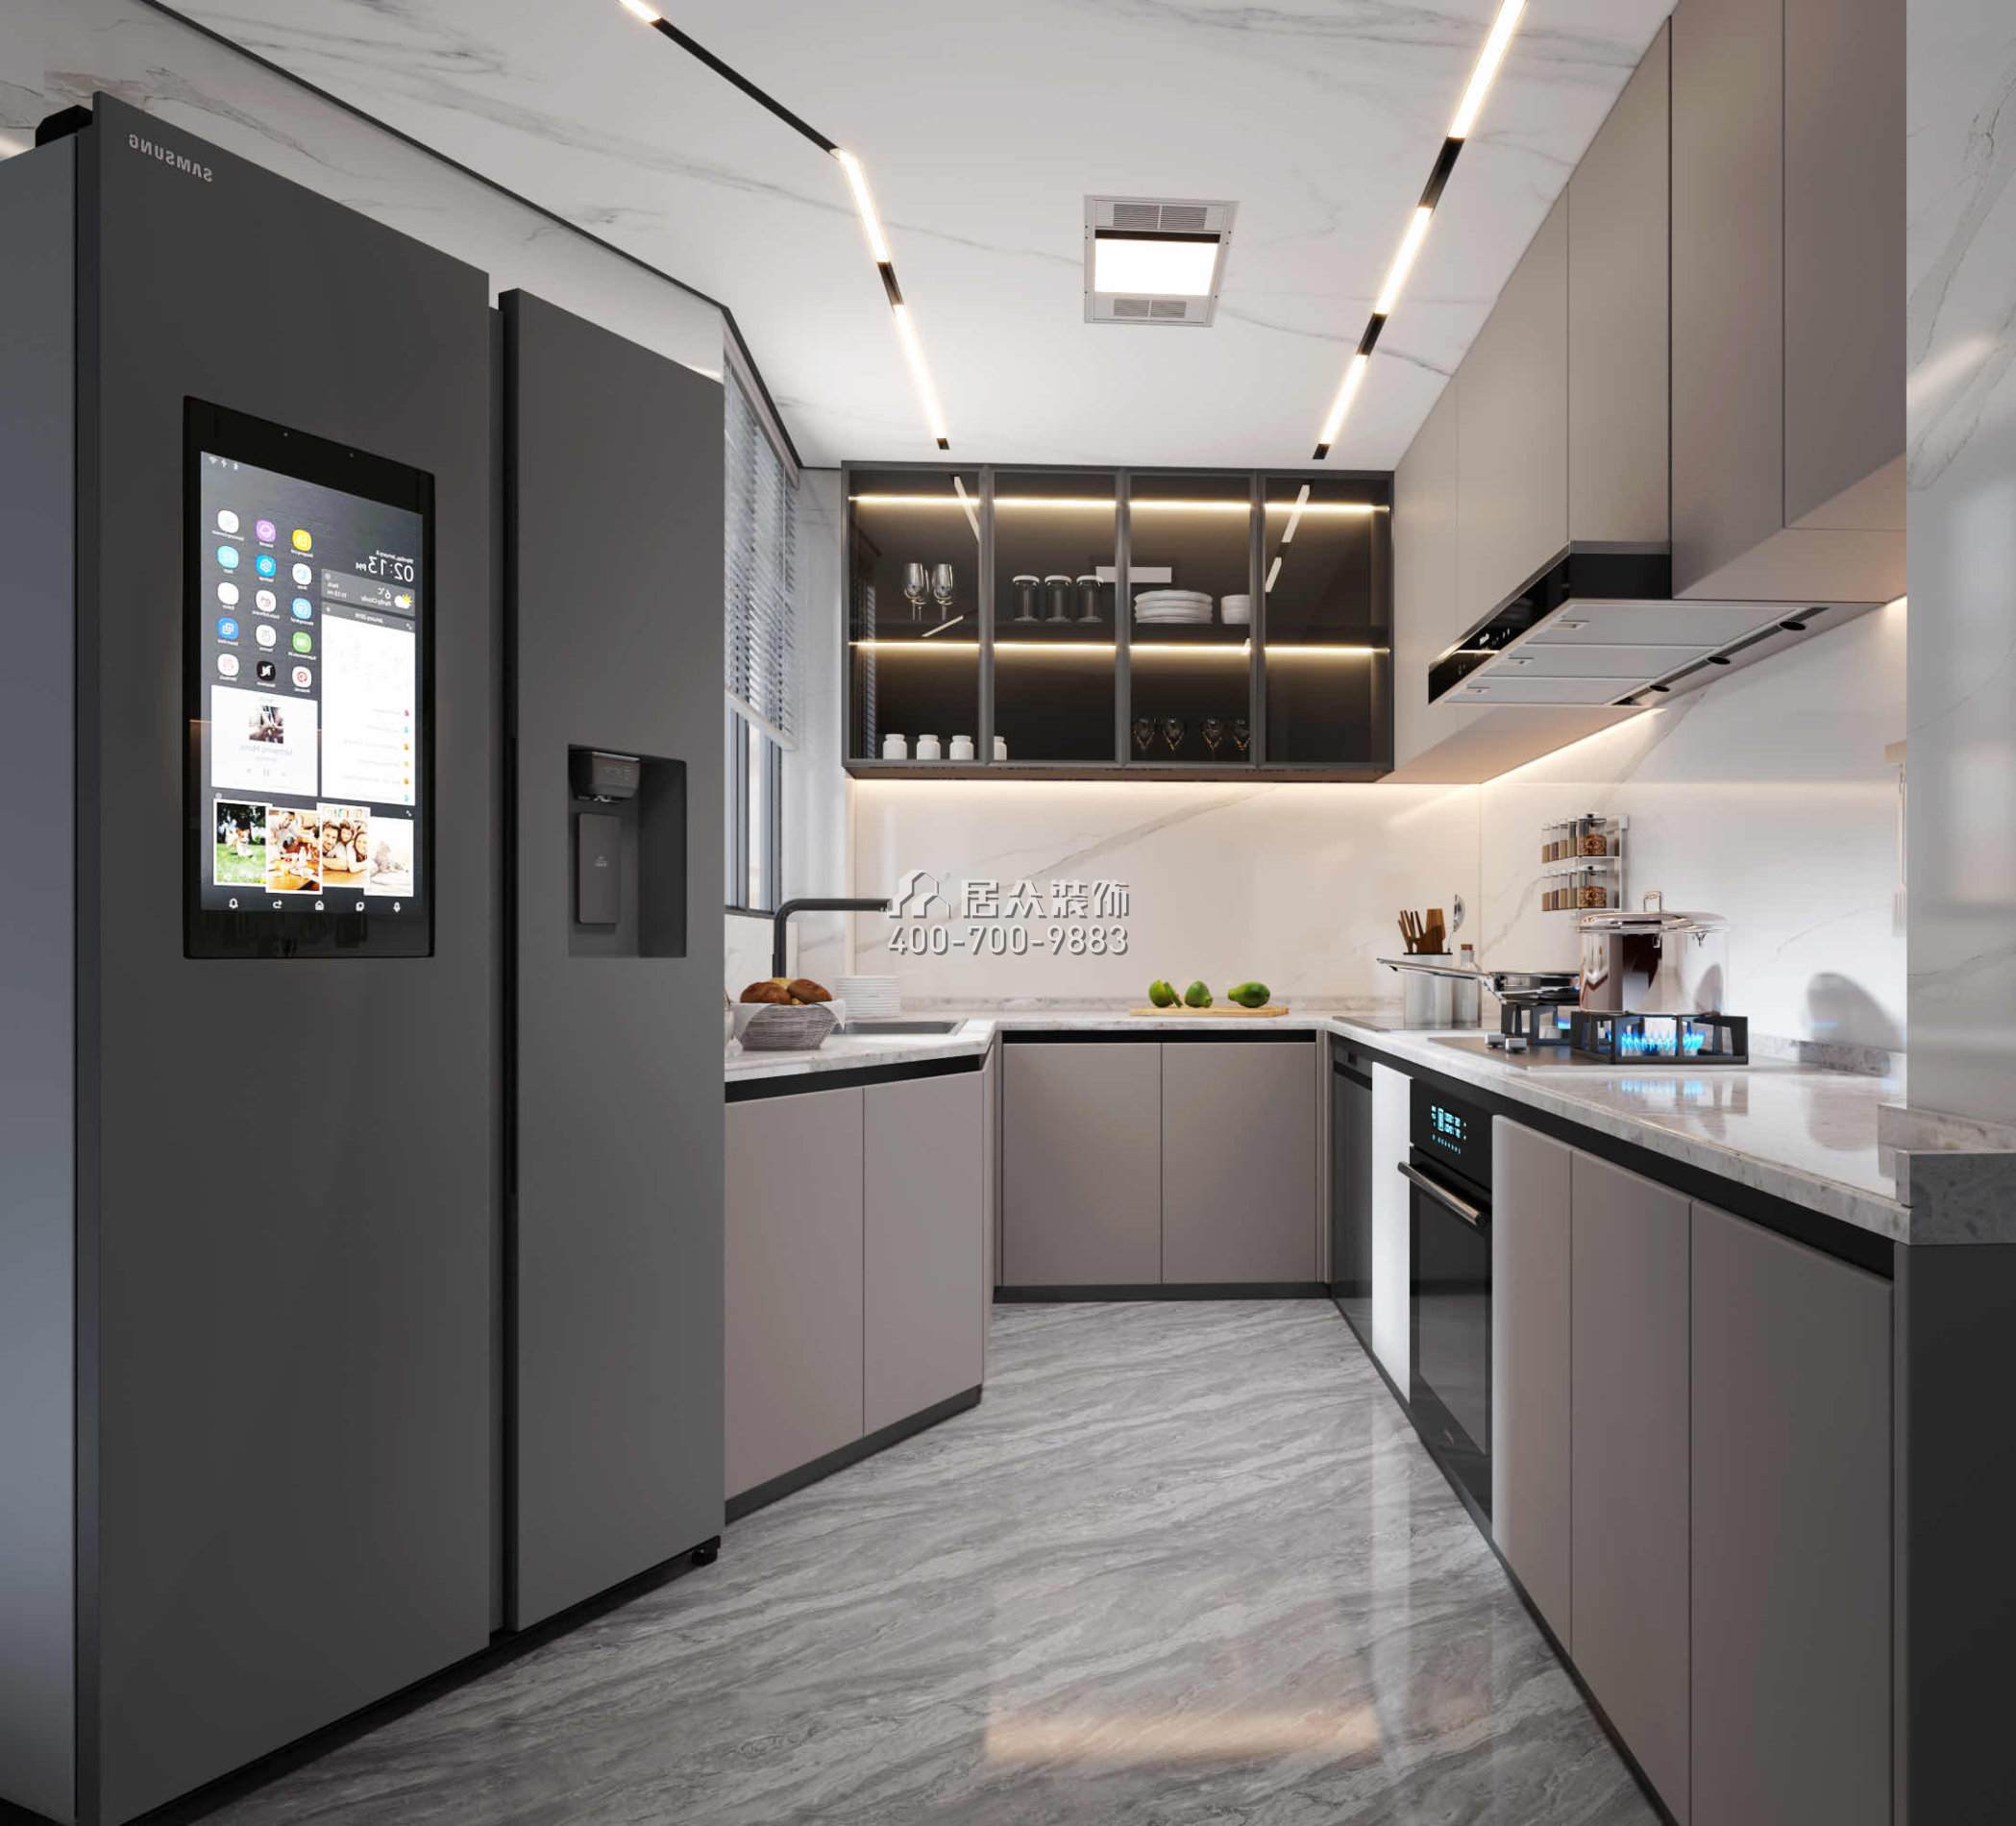 碧海红树园120平方米现代简约风格平层户型厨房装修效果图